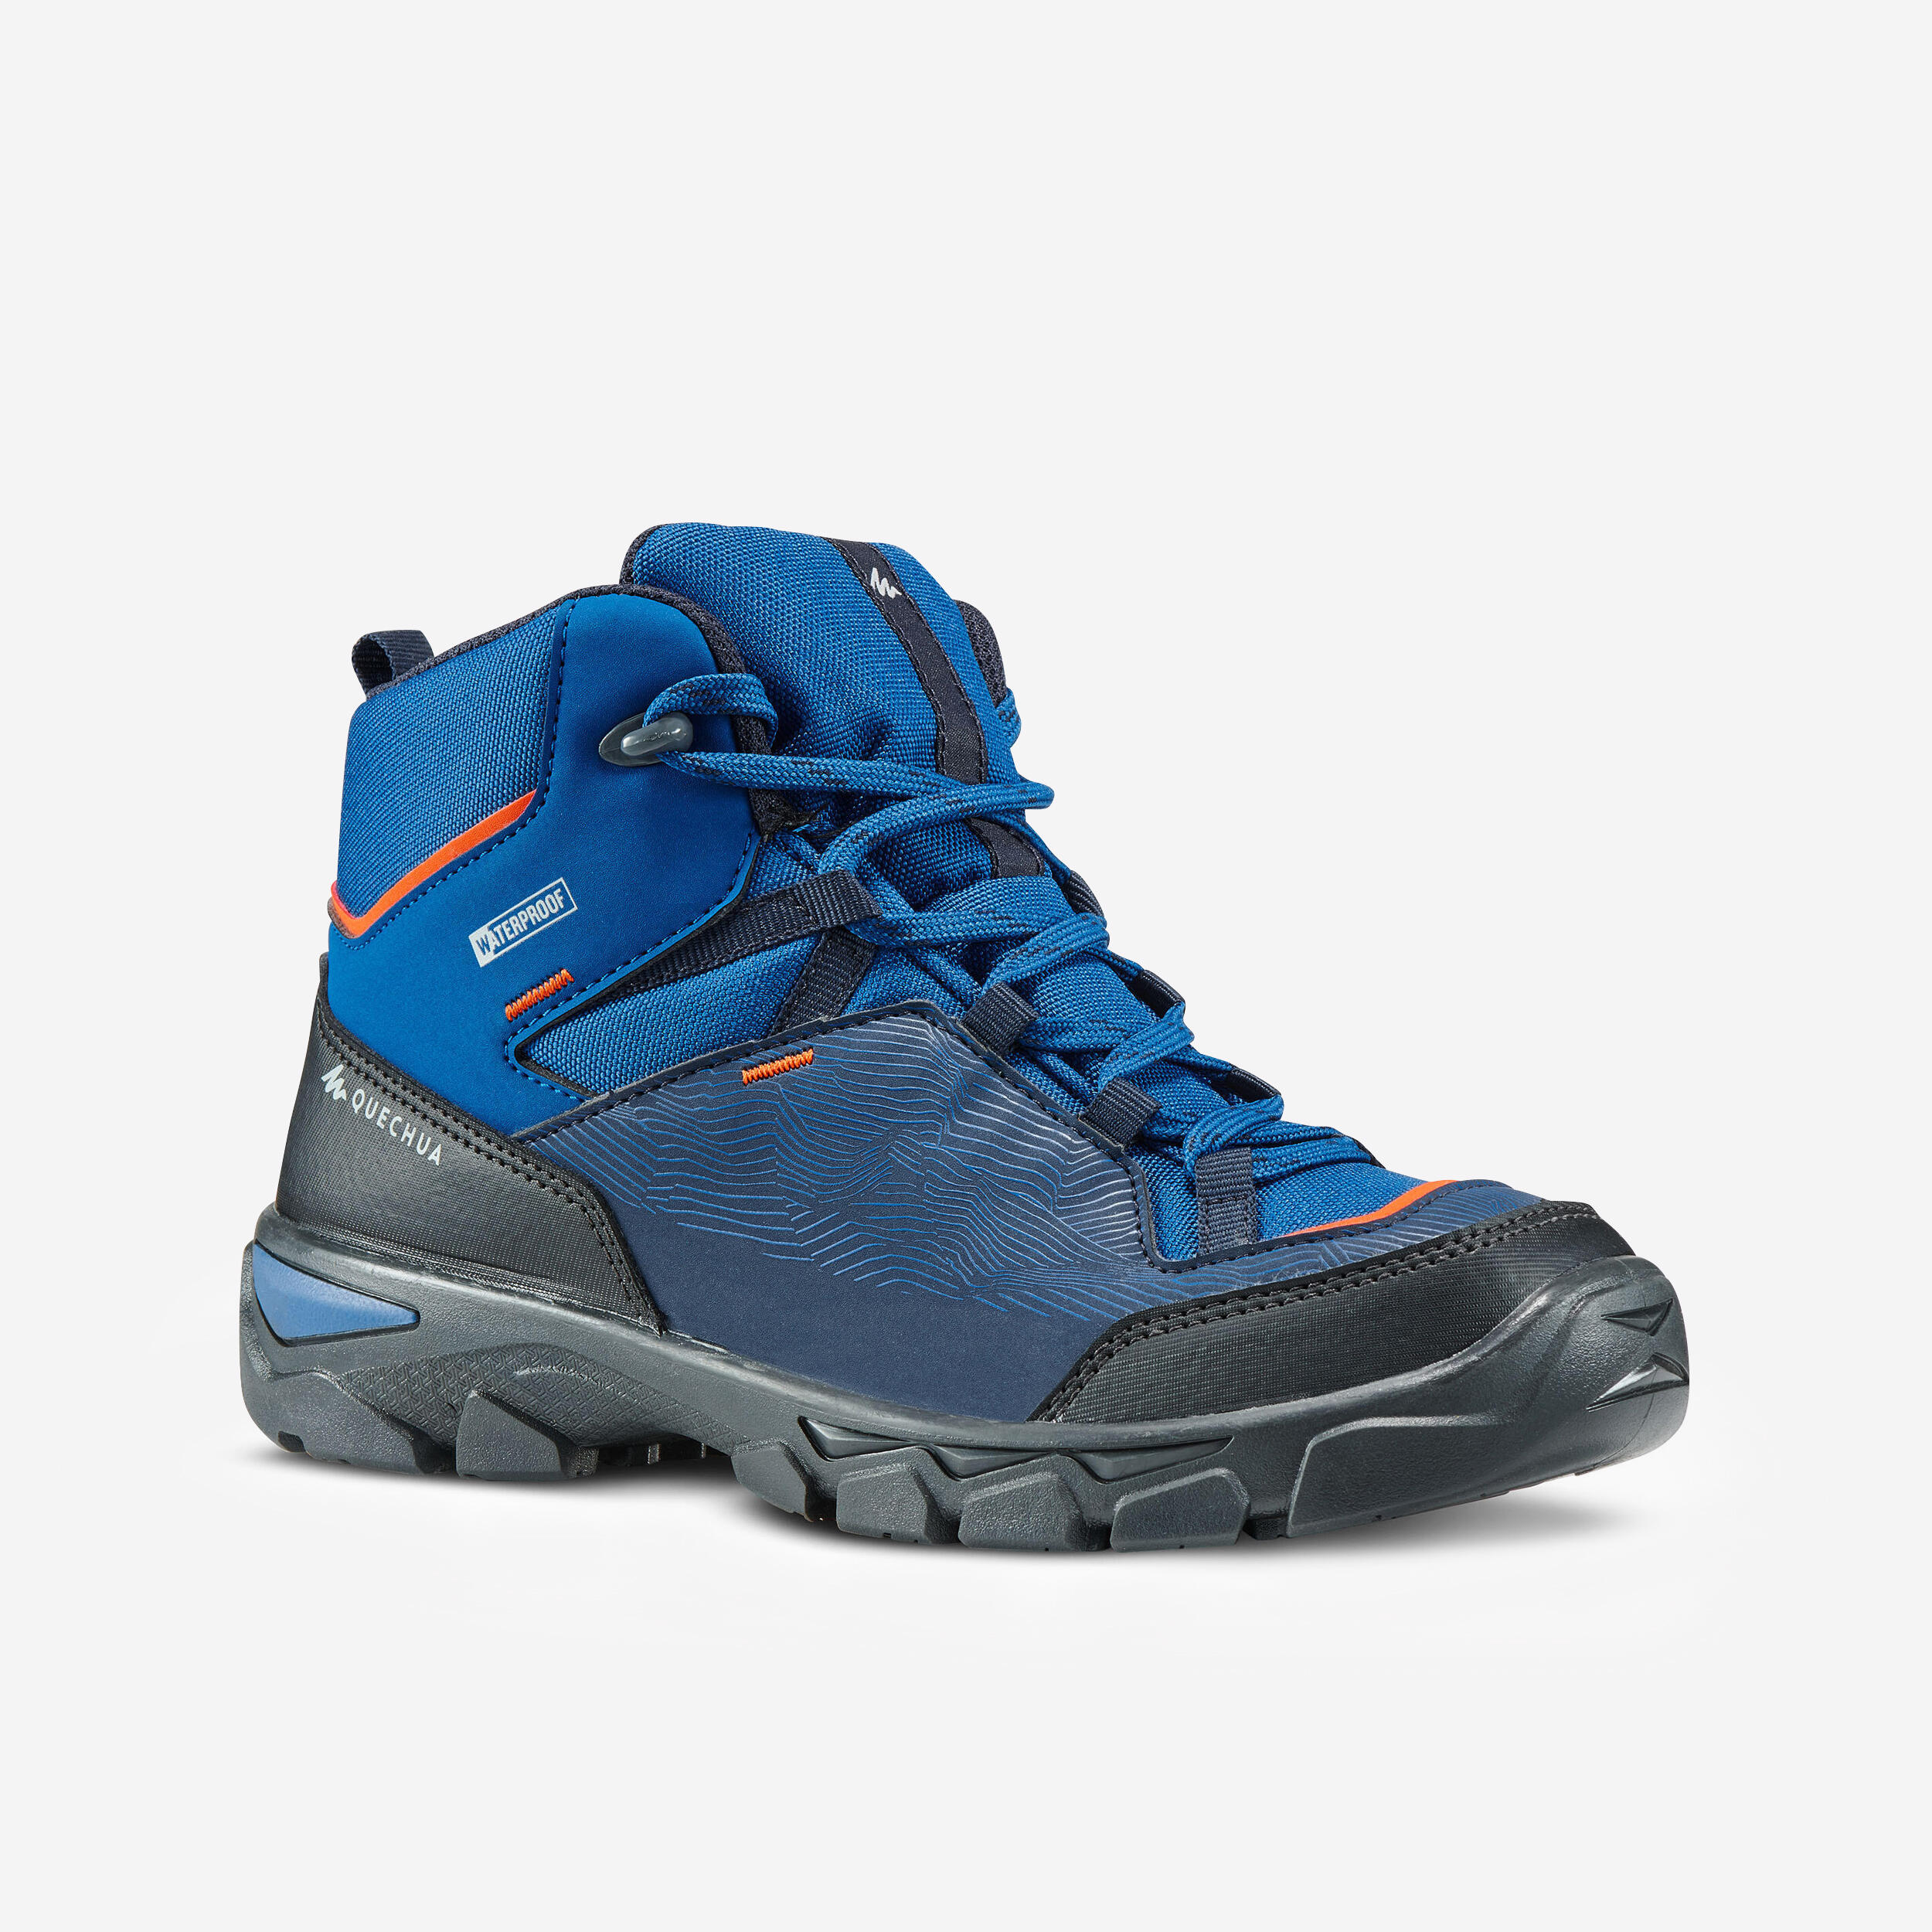 Chidren's waterproof walking shoes - MH120 MID blue - size 3-5 1/8